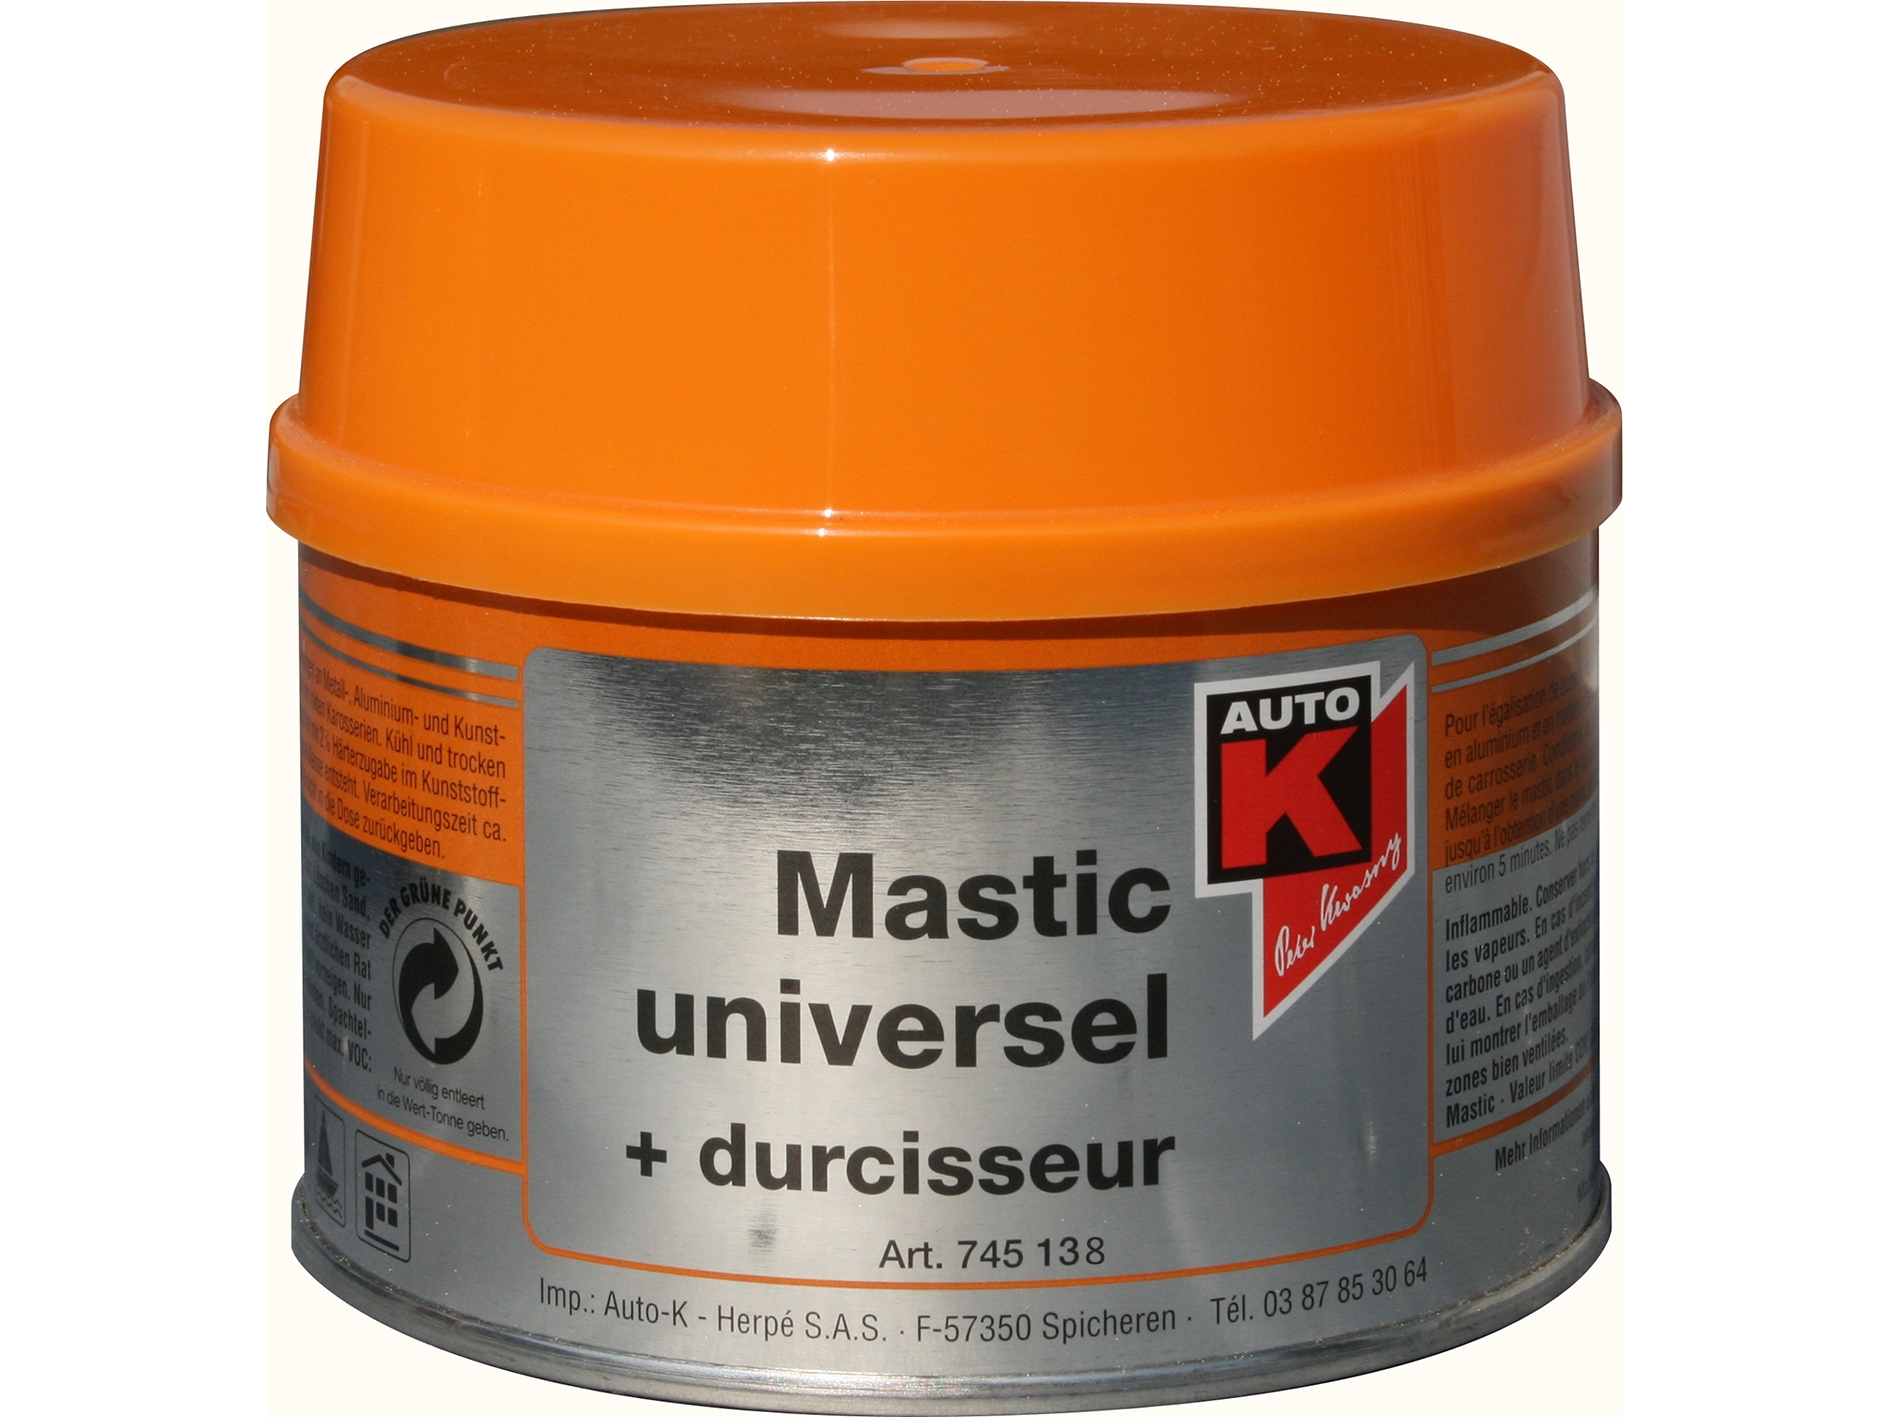 MASTIC UNIVERSEL + DURCISSEUR 1000GR - AUTO-K 745138